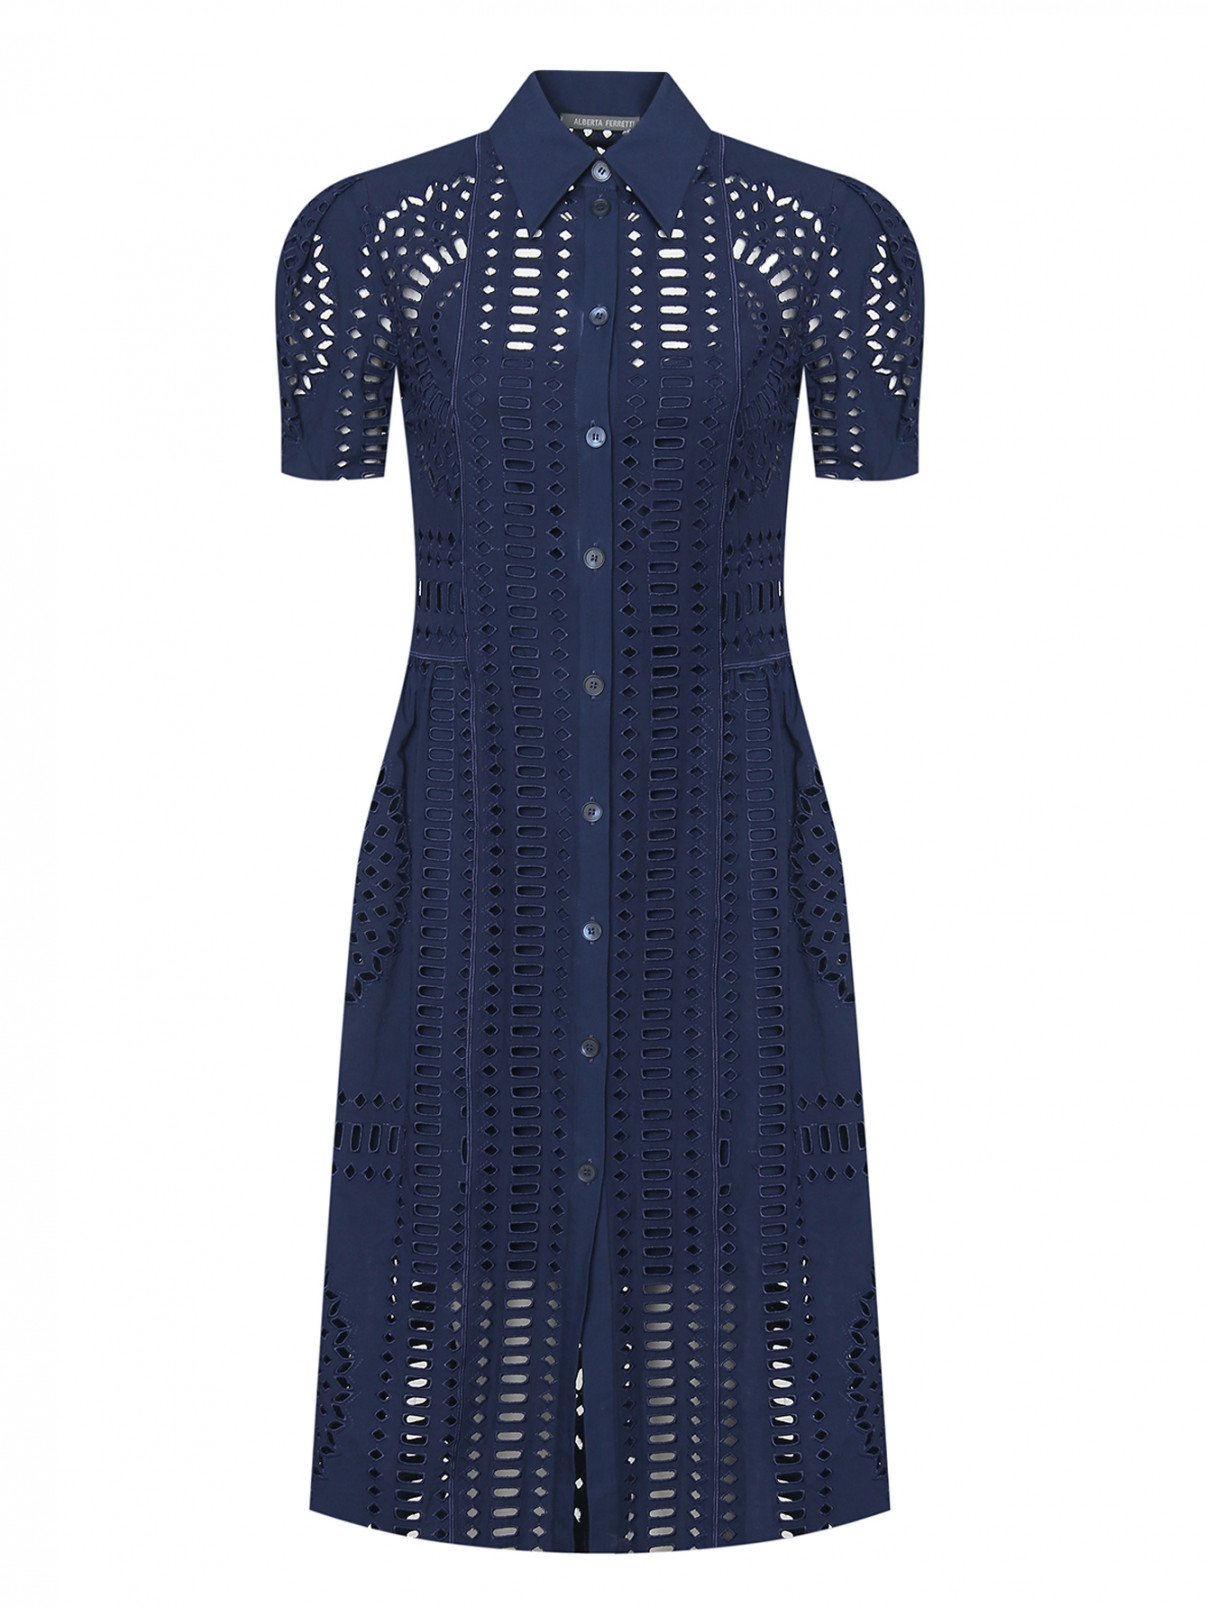 Платье с вышивкой ришелье Alberta Ferretti  –  Общий вид  – Цвет:  Синий